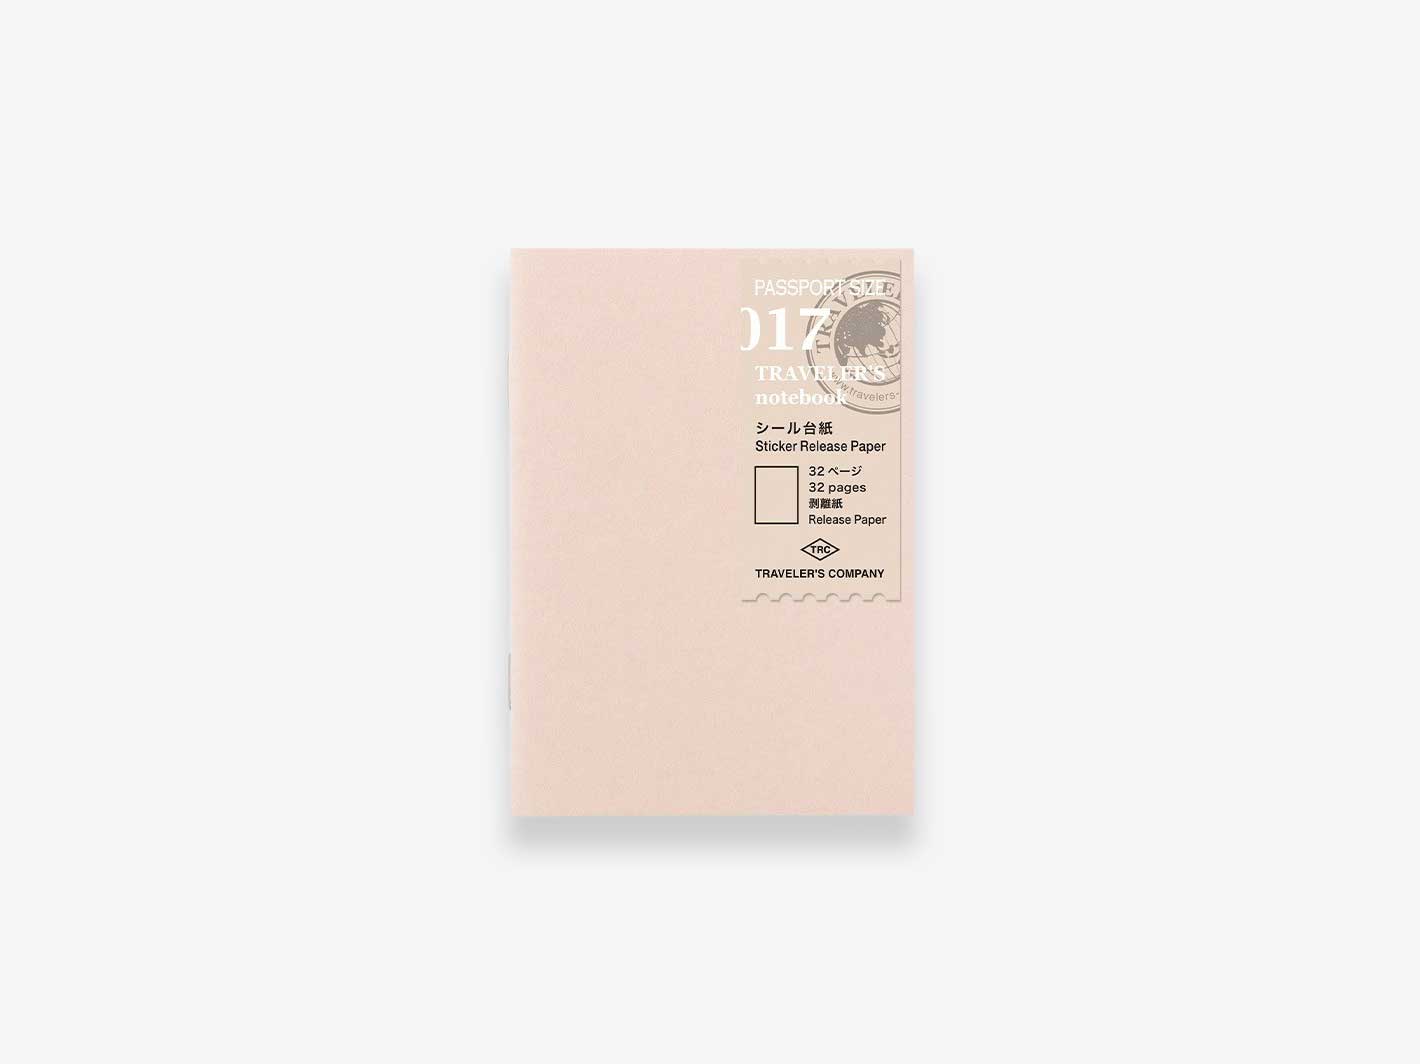 017. Sticker Release Paper Refill Passport Size TRAVELER'S notebook